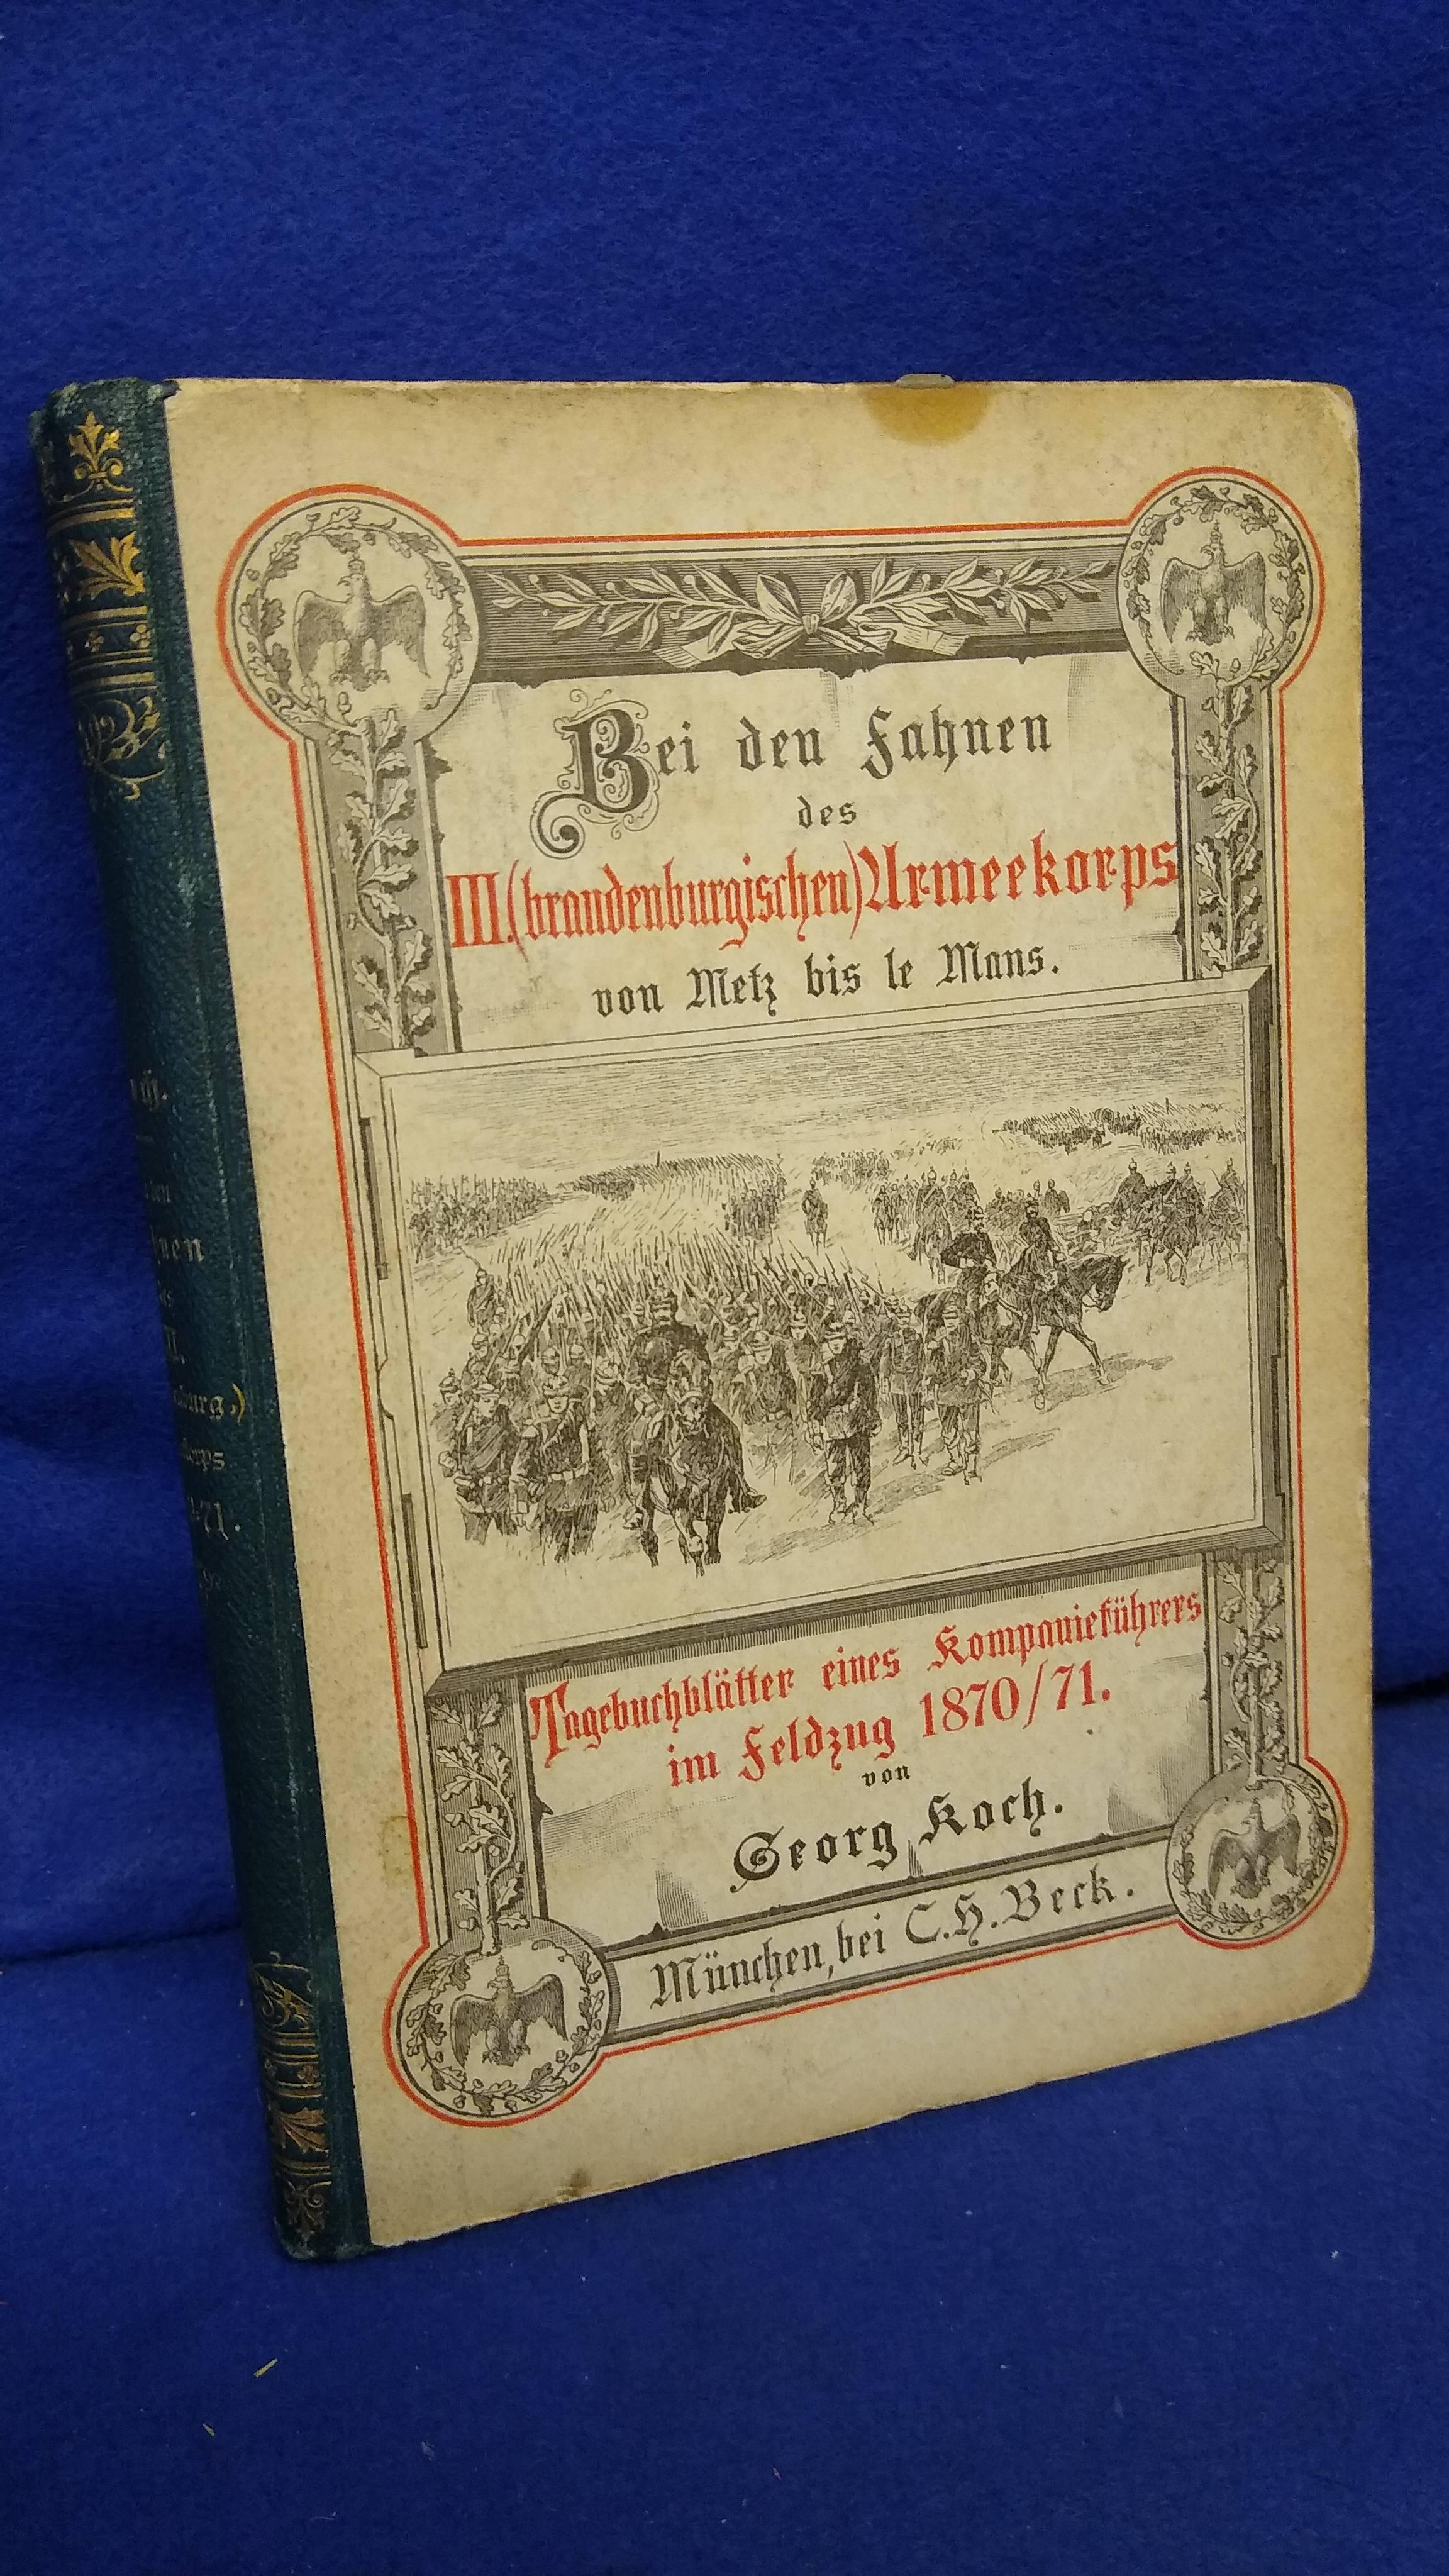 Bei den Fahnen des III. (brandenburgischen) Armeekorps von Metz bis Le Mans: Tagebuchblätter eines Kompanieführers im Feldzug 1870/71.